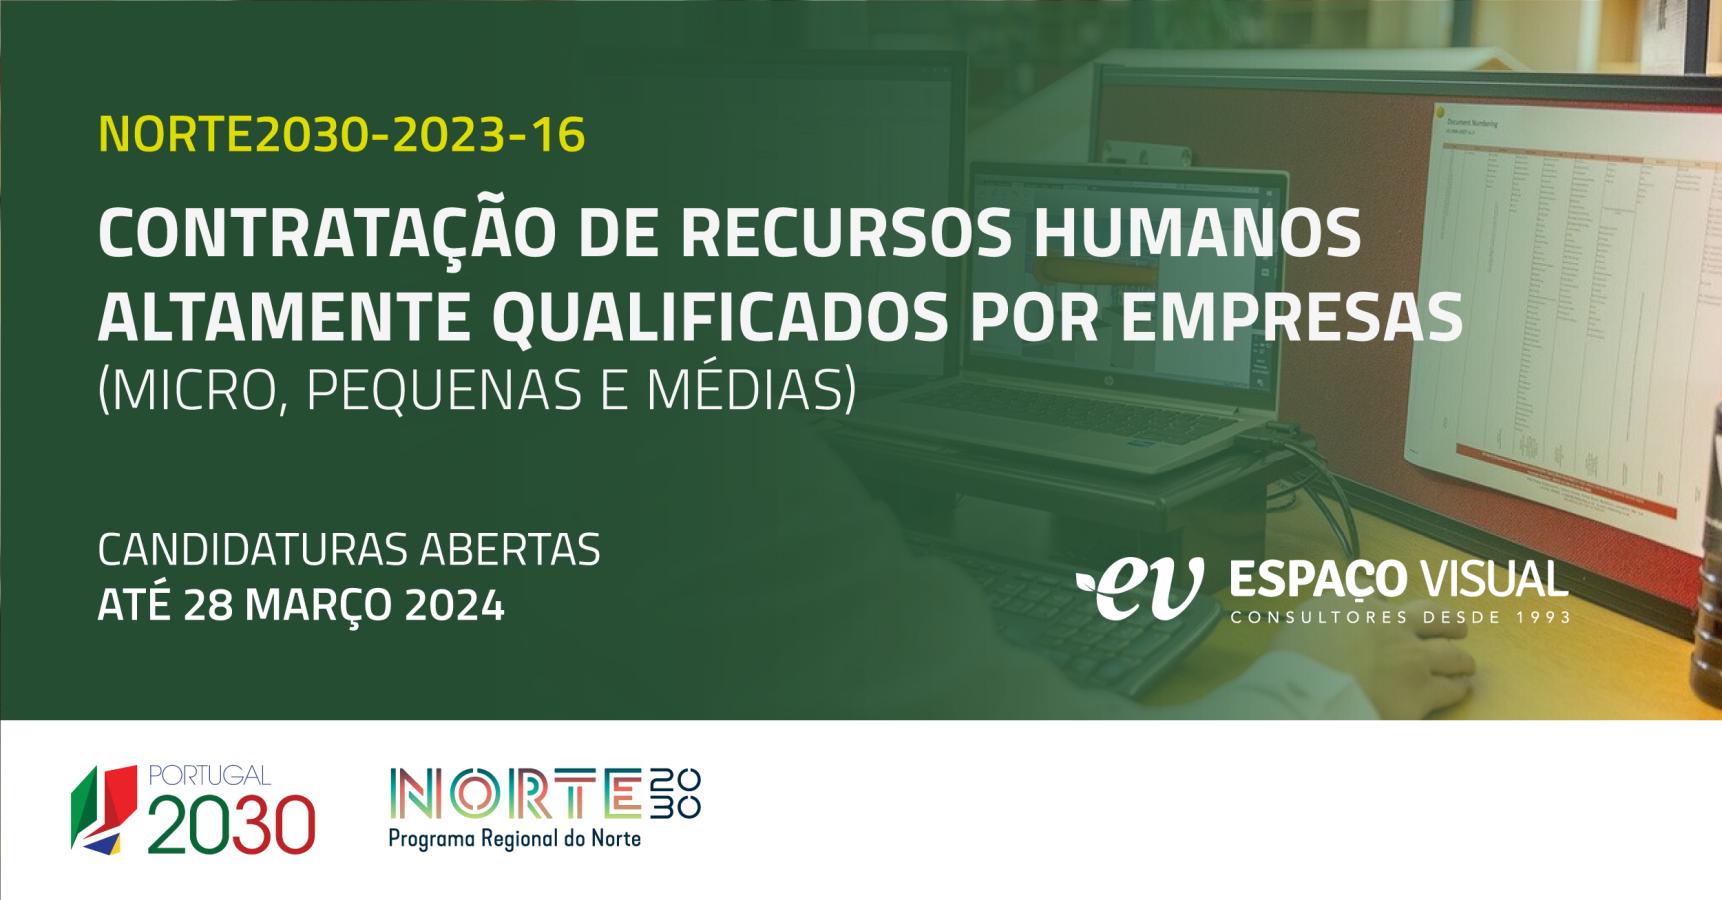 Contratação de Recursos Humanos Altamente Qualificados por empresas (micro, pequenas e médias) | NORTE2030-2023-15